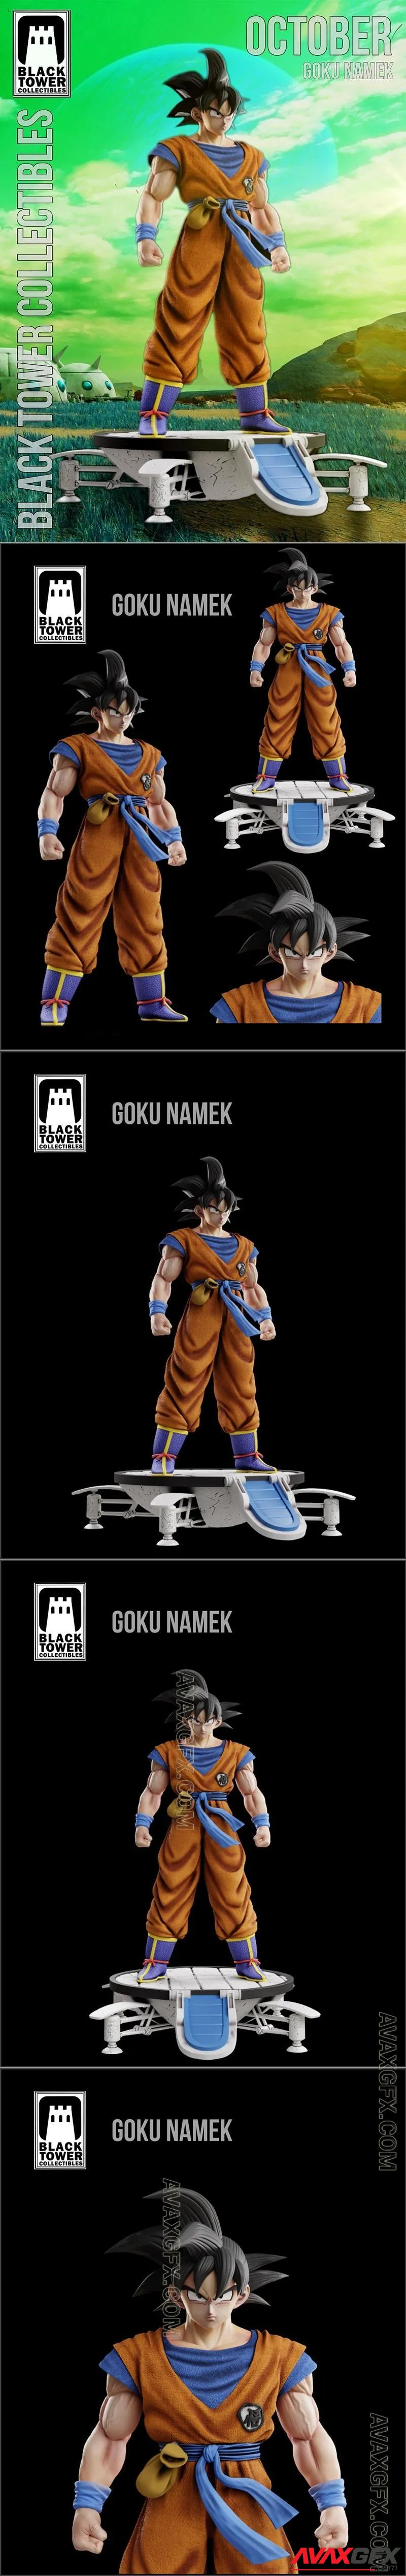 Black Tower Collectibles - Goku Namek - STL 3D Model